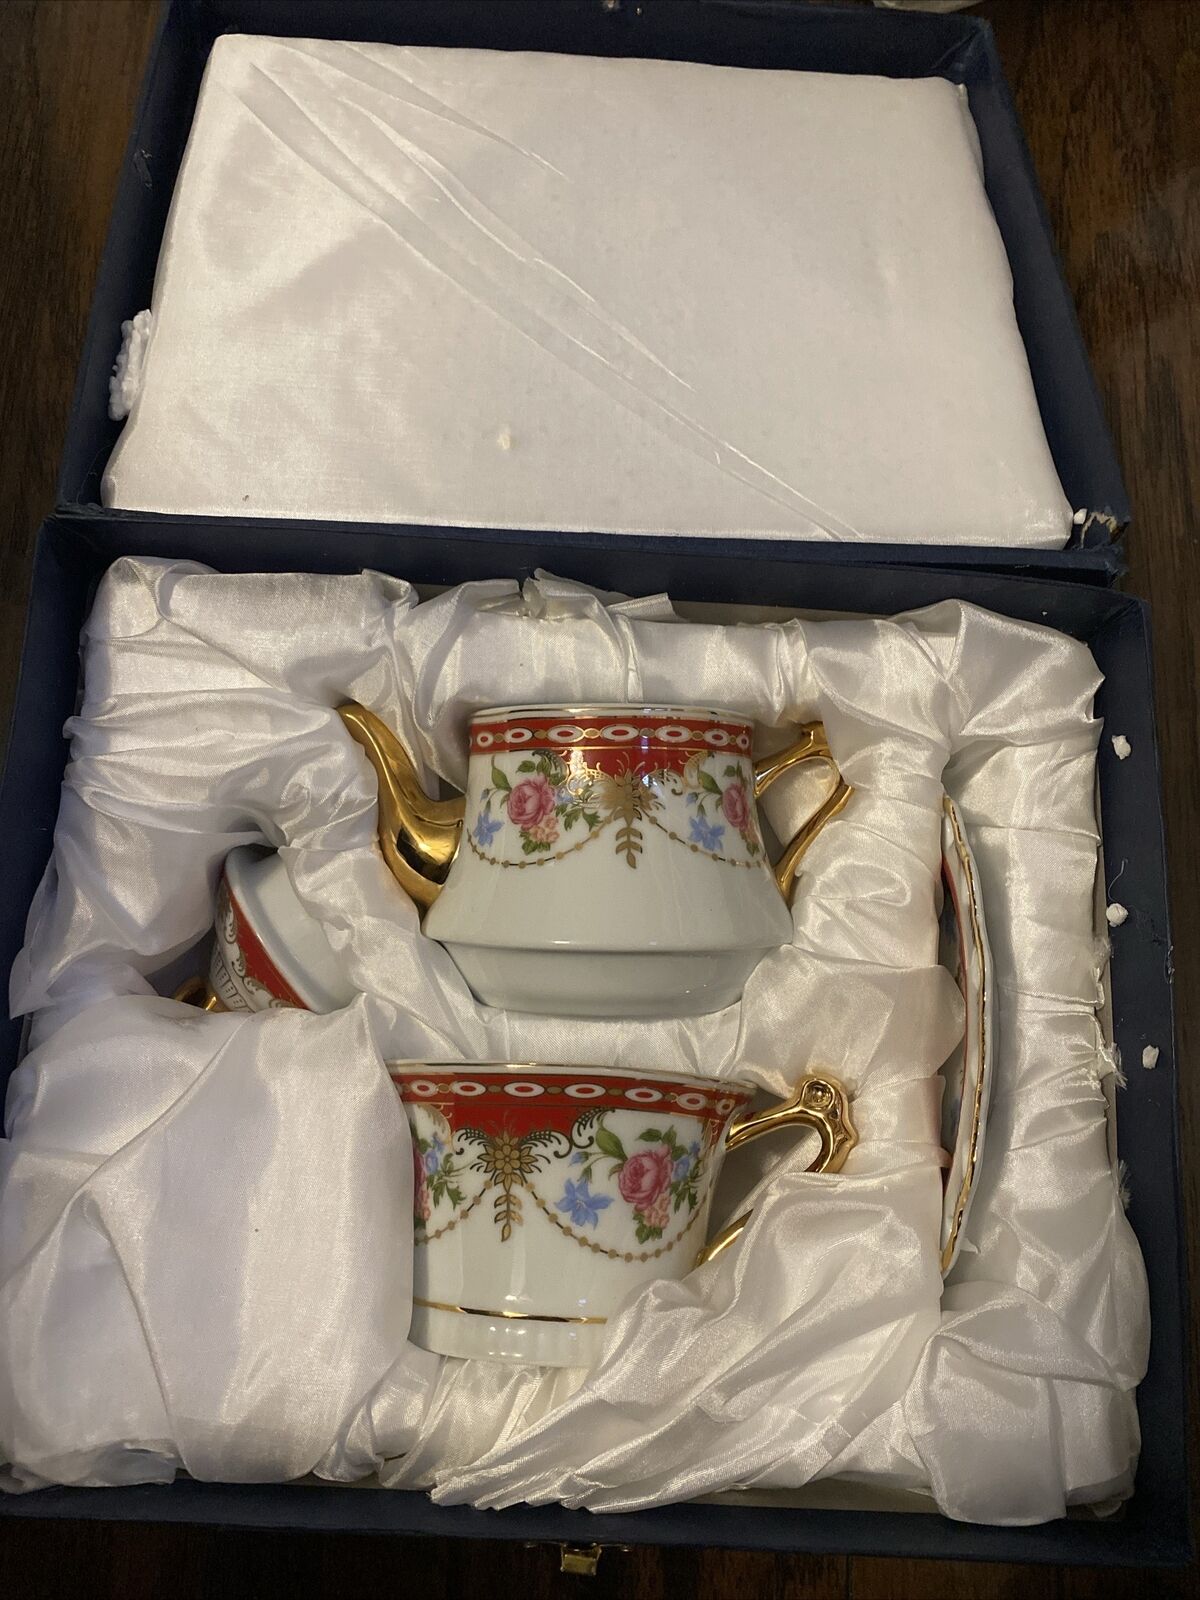 Sorelle Fine Porcelain Tea Set For One.Gold Trim.Heart.Flowers.box A Bit Mess up